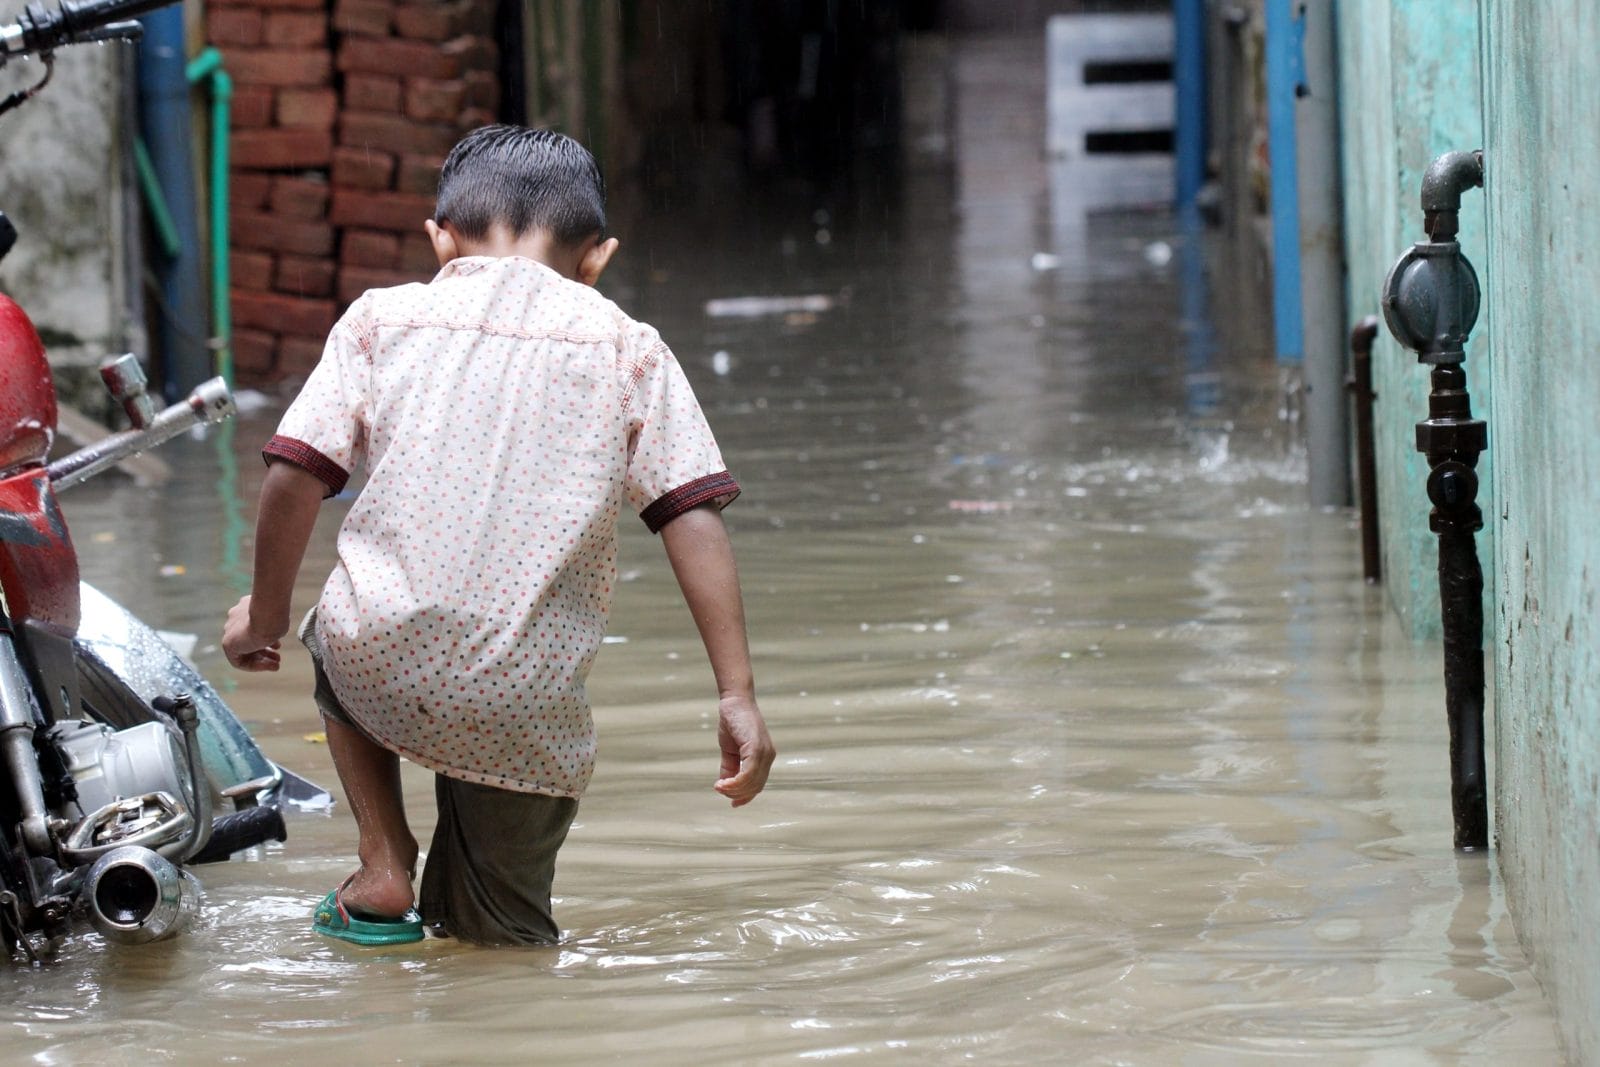 Boy walking in floods in Pakistan